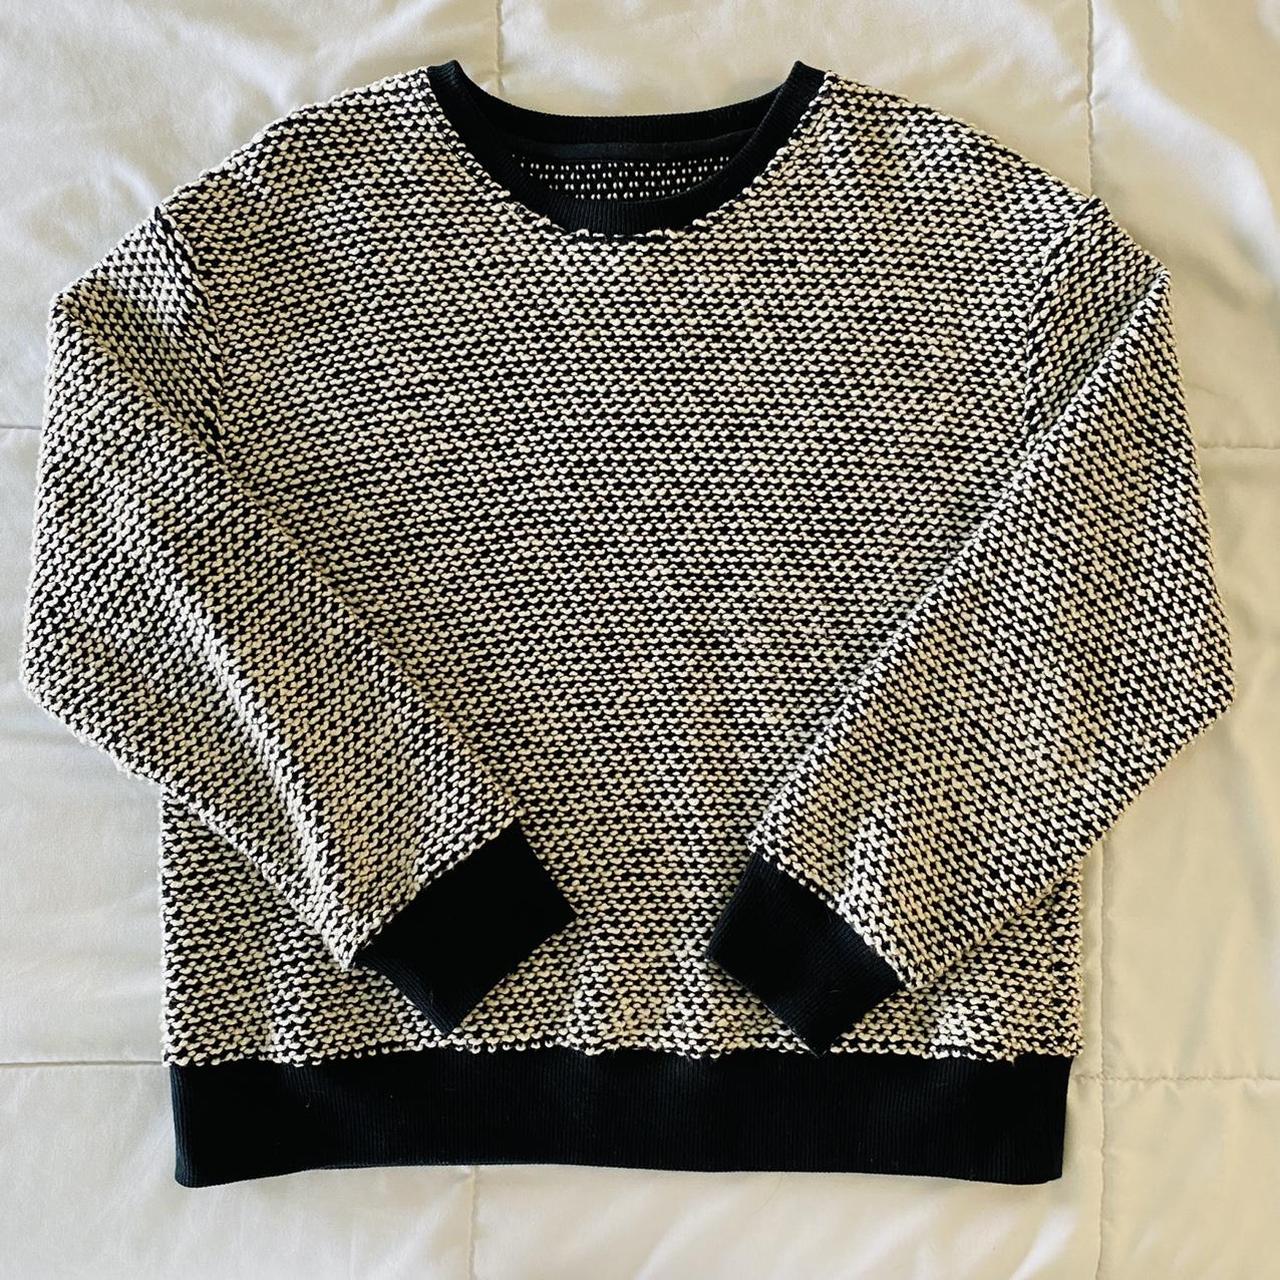 Product Image 2 - Marine Layer Birdseye Sweater. Size